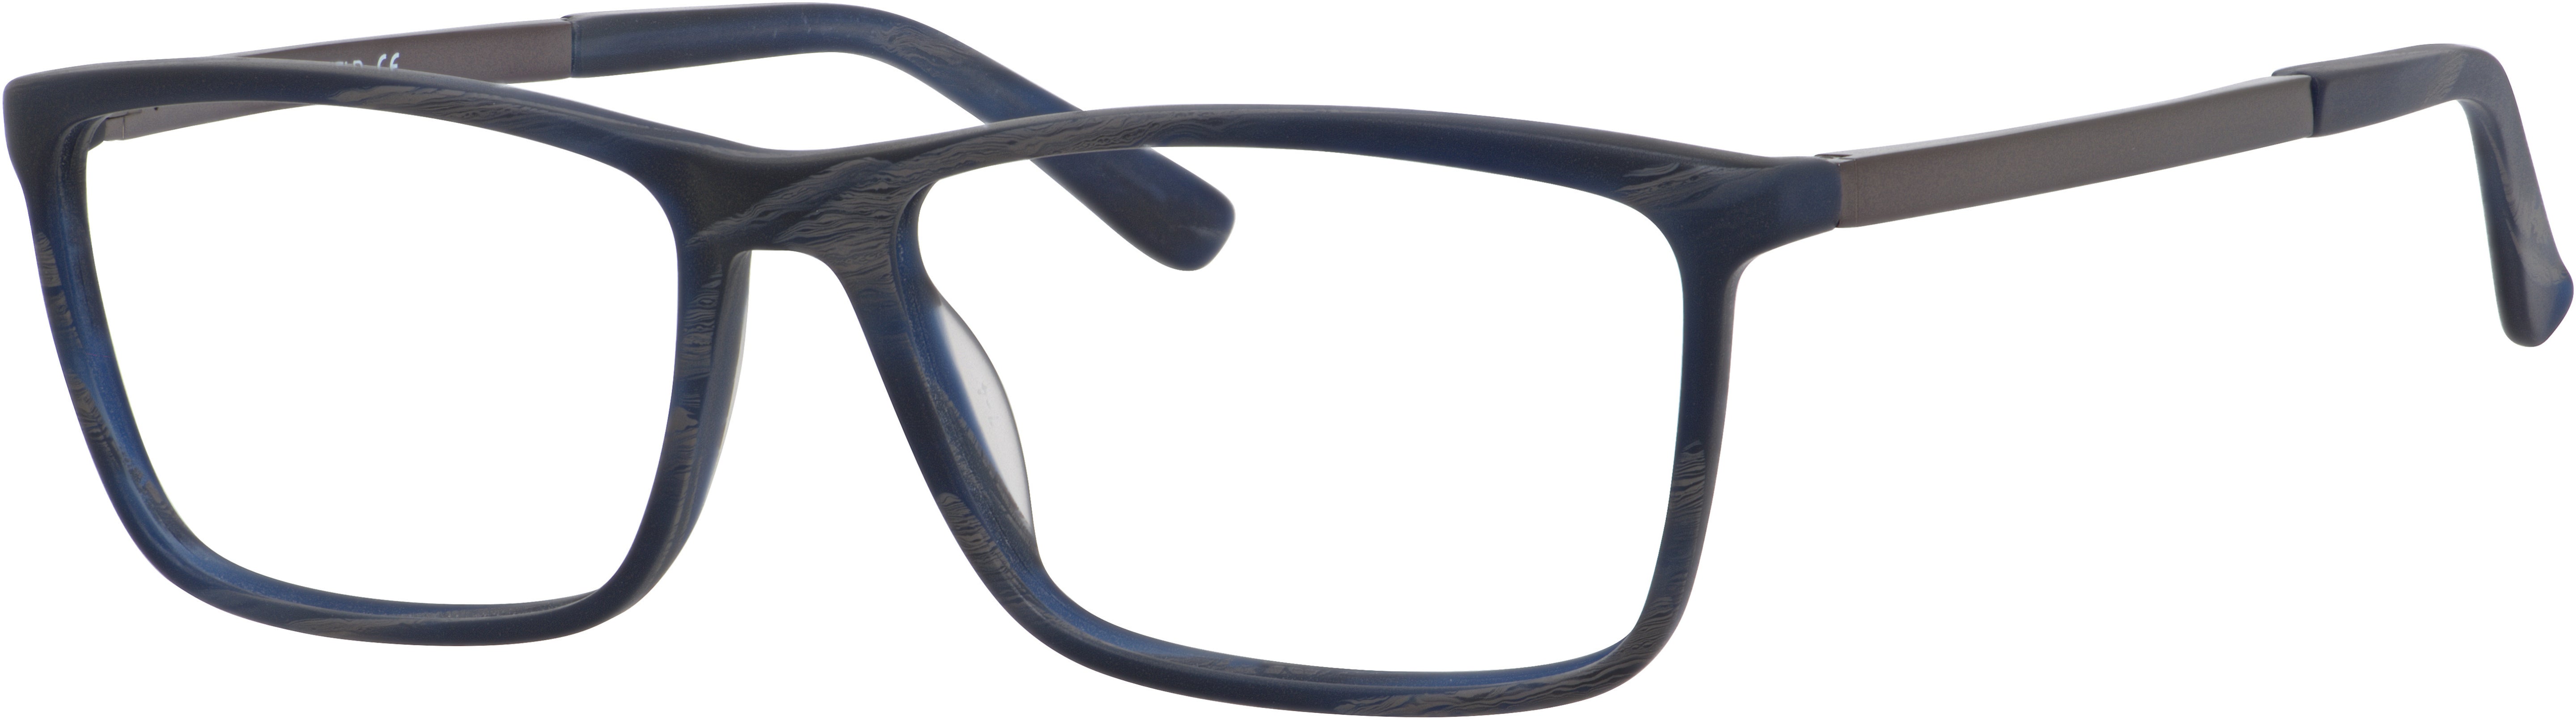  Chesterfield 54XL Rectangular Eyeglasses 0HW8-0HW8  Blue Horn (00 Demo Lens)